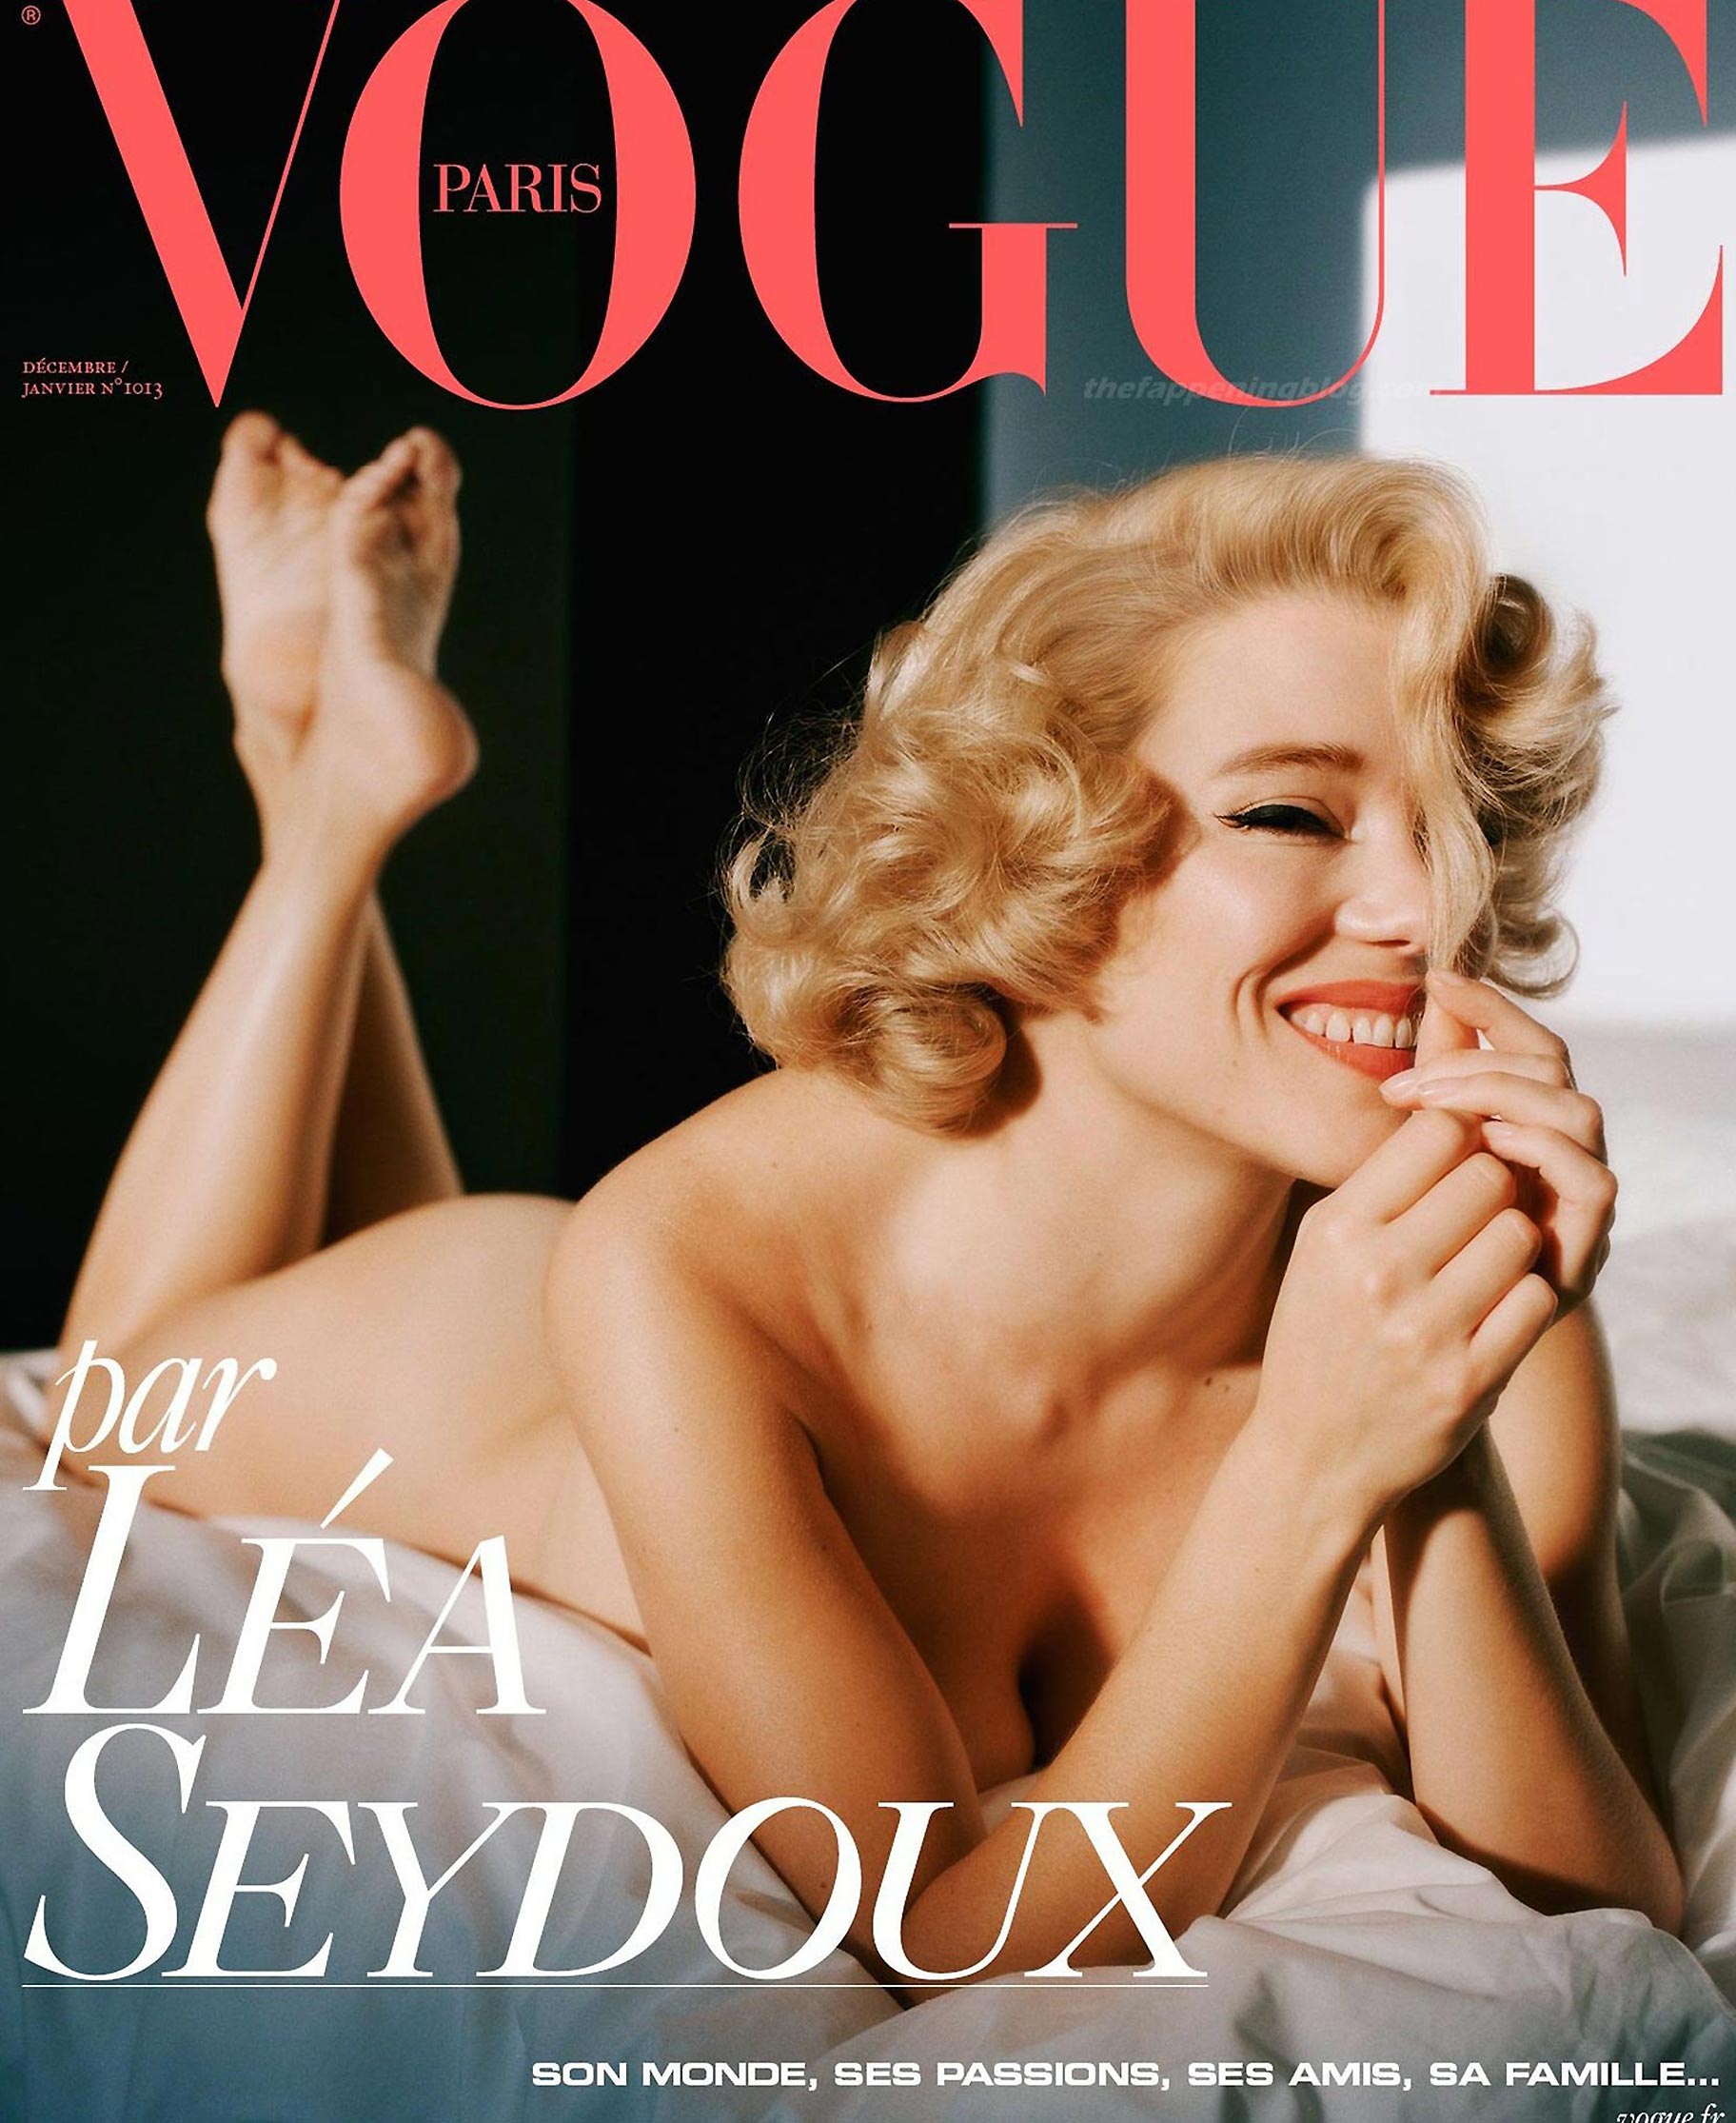 Lea Seydoux Porn Tape - Lea Seydoux Nude Photos and LEAKED Sex Tape - ScandalPost